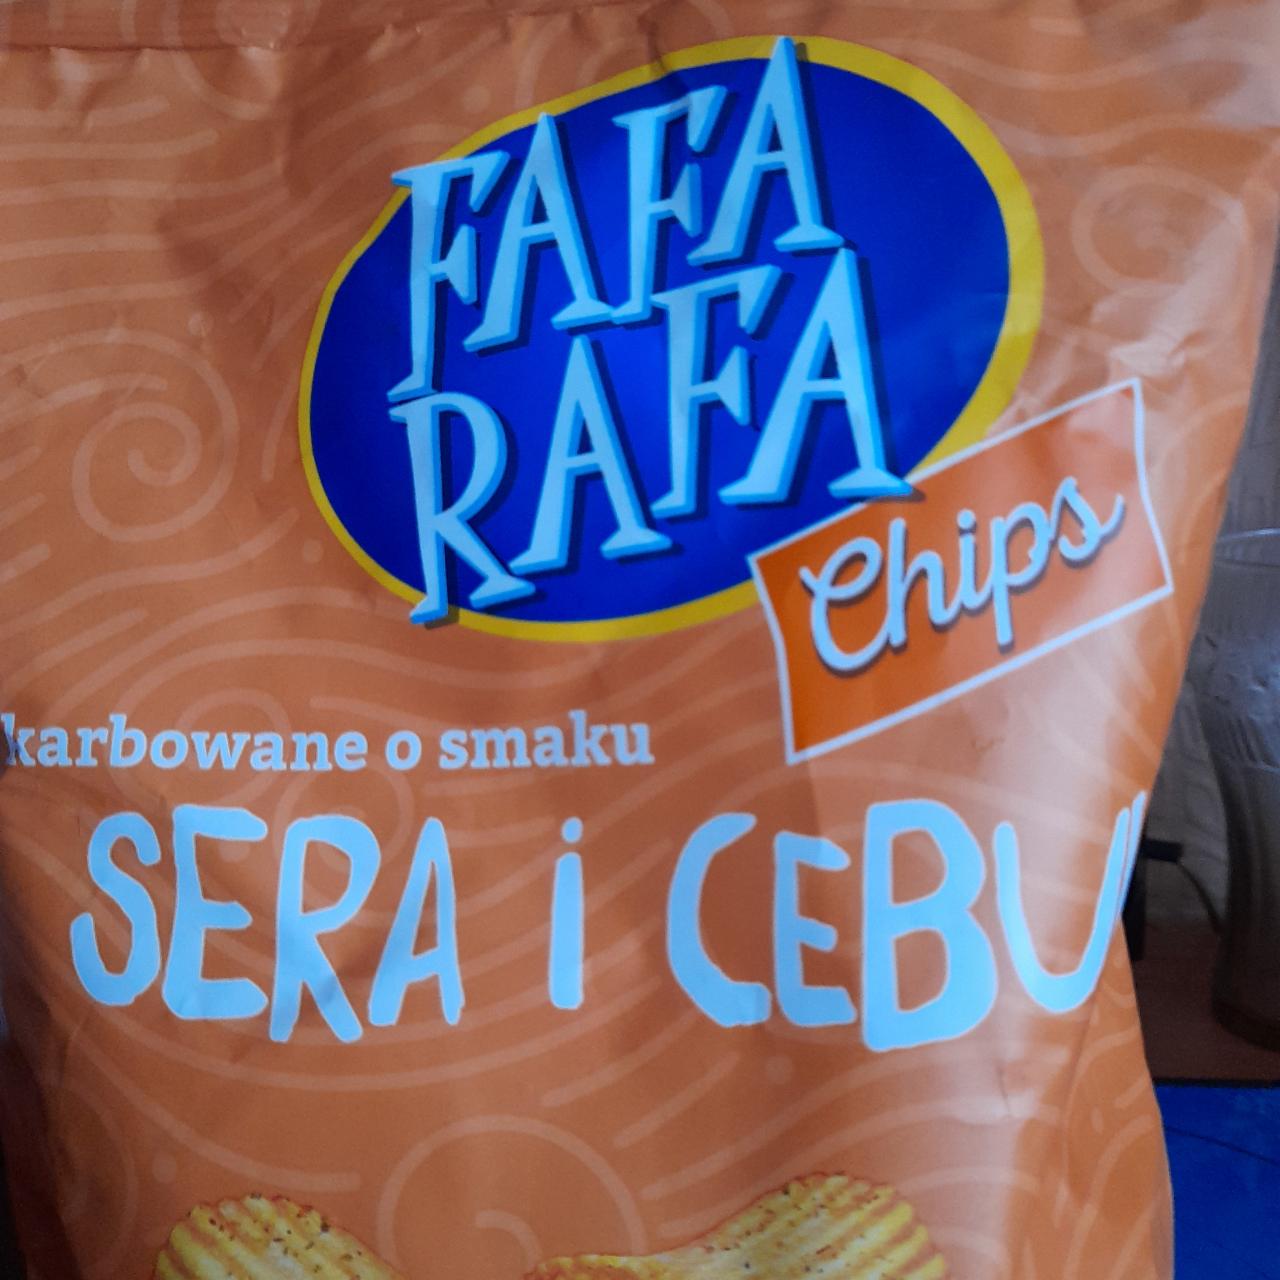 Zdjęcia - Chips karbowane o smaku sera i cebuli Fafa Rafa